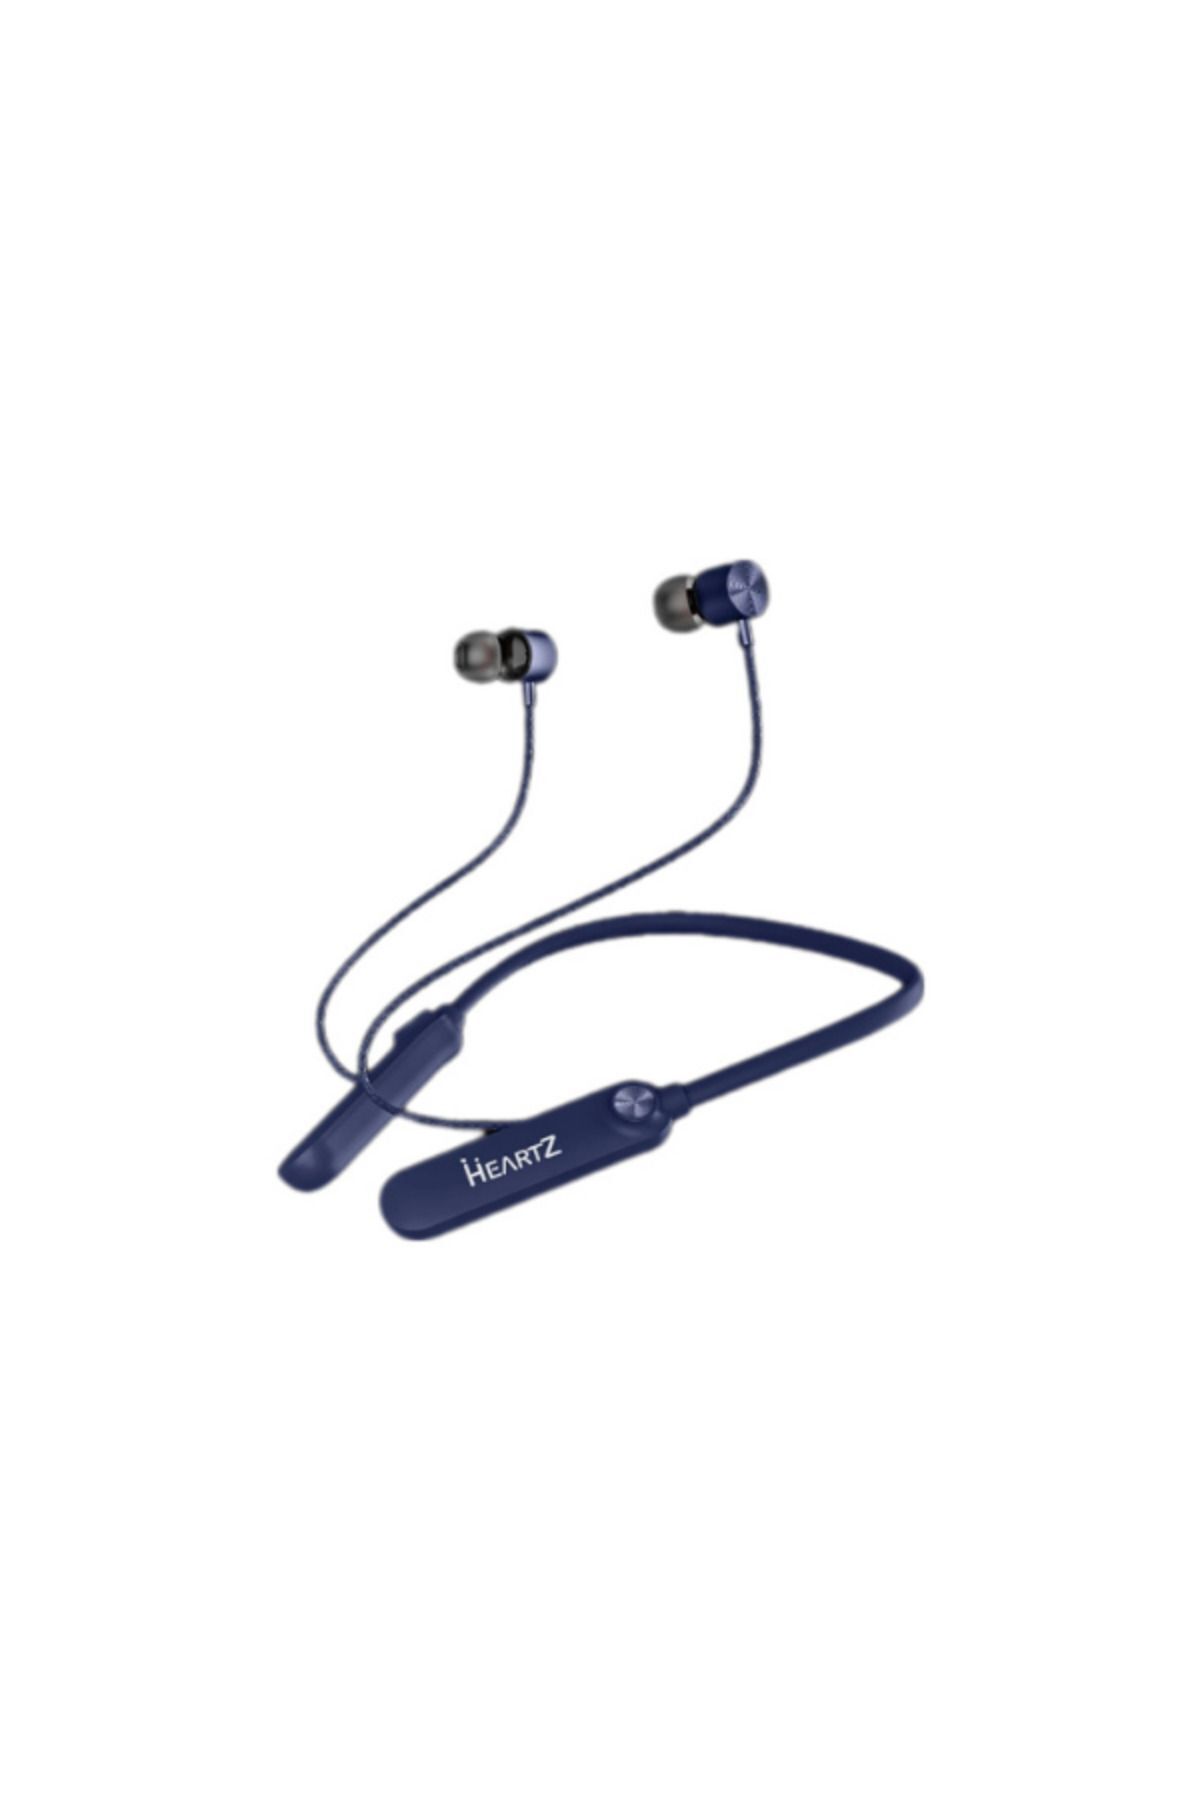 GevrekTechs 150 Saat Kullanım Süreli Gürültü Engellemeli Mıknatıslı Boyun Bantlı Bluetooth Kablosuz Kulaklık